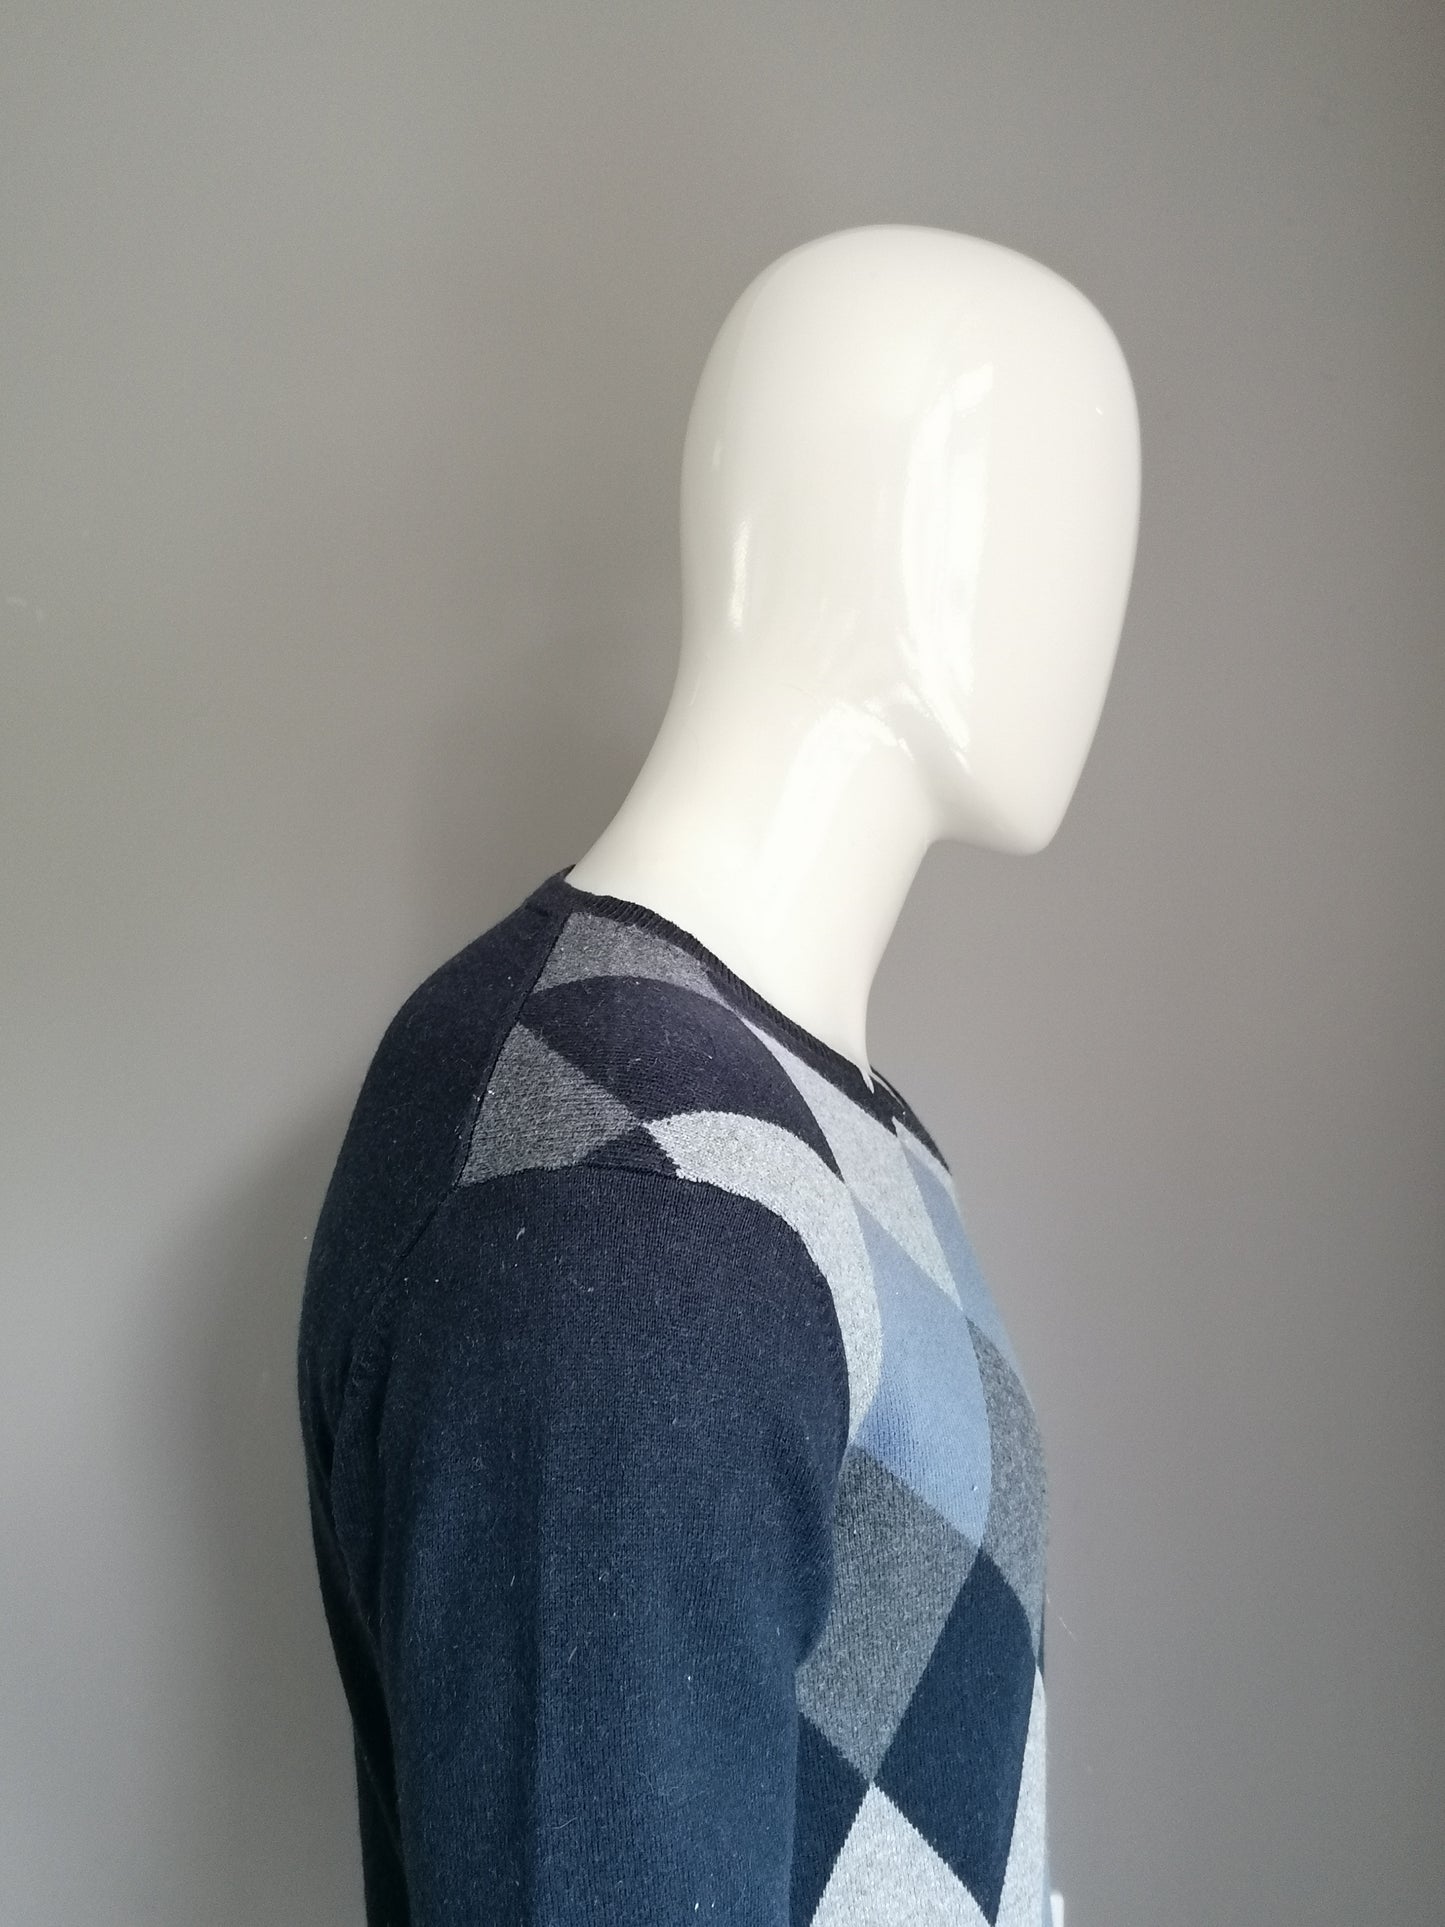 Suéter de Argyle de Cashmere Sun68 con cuello en V. Gris azulado. Talla M